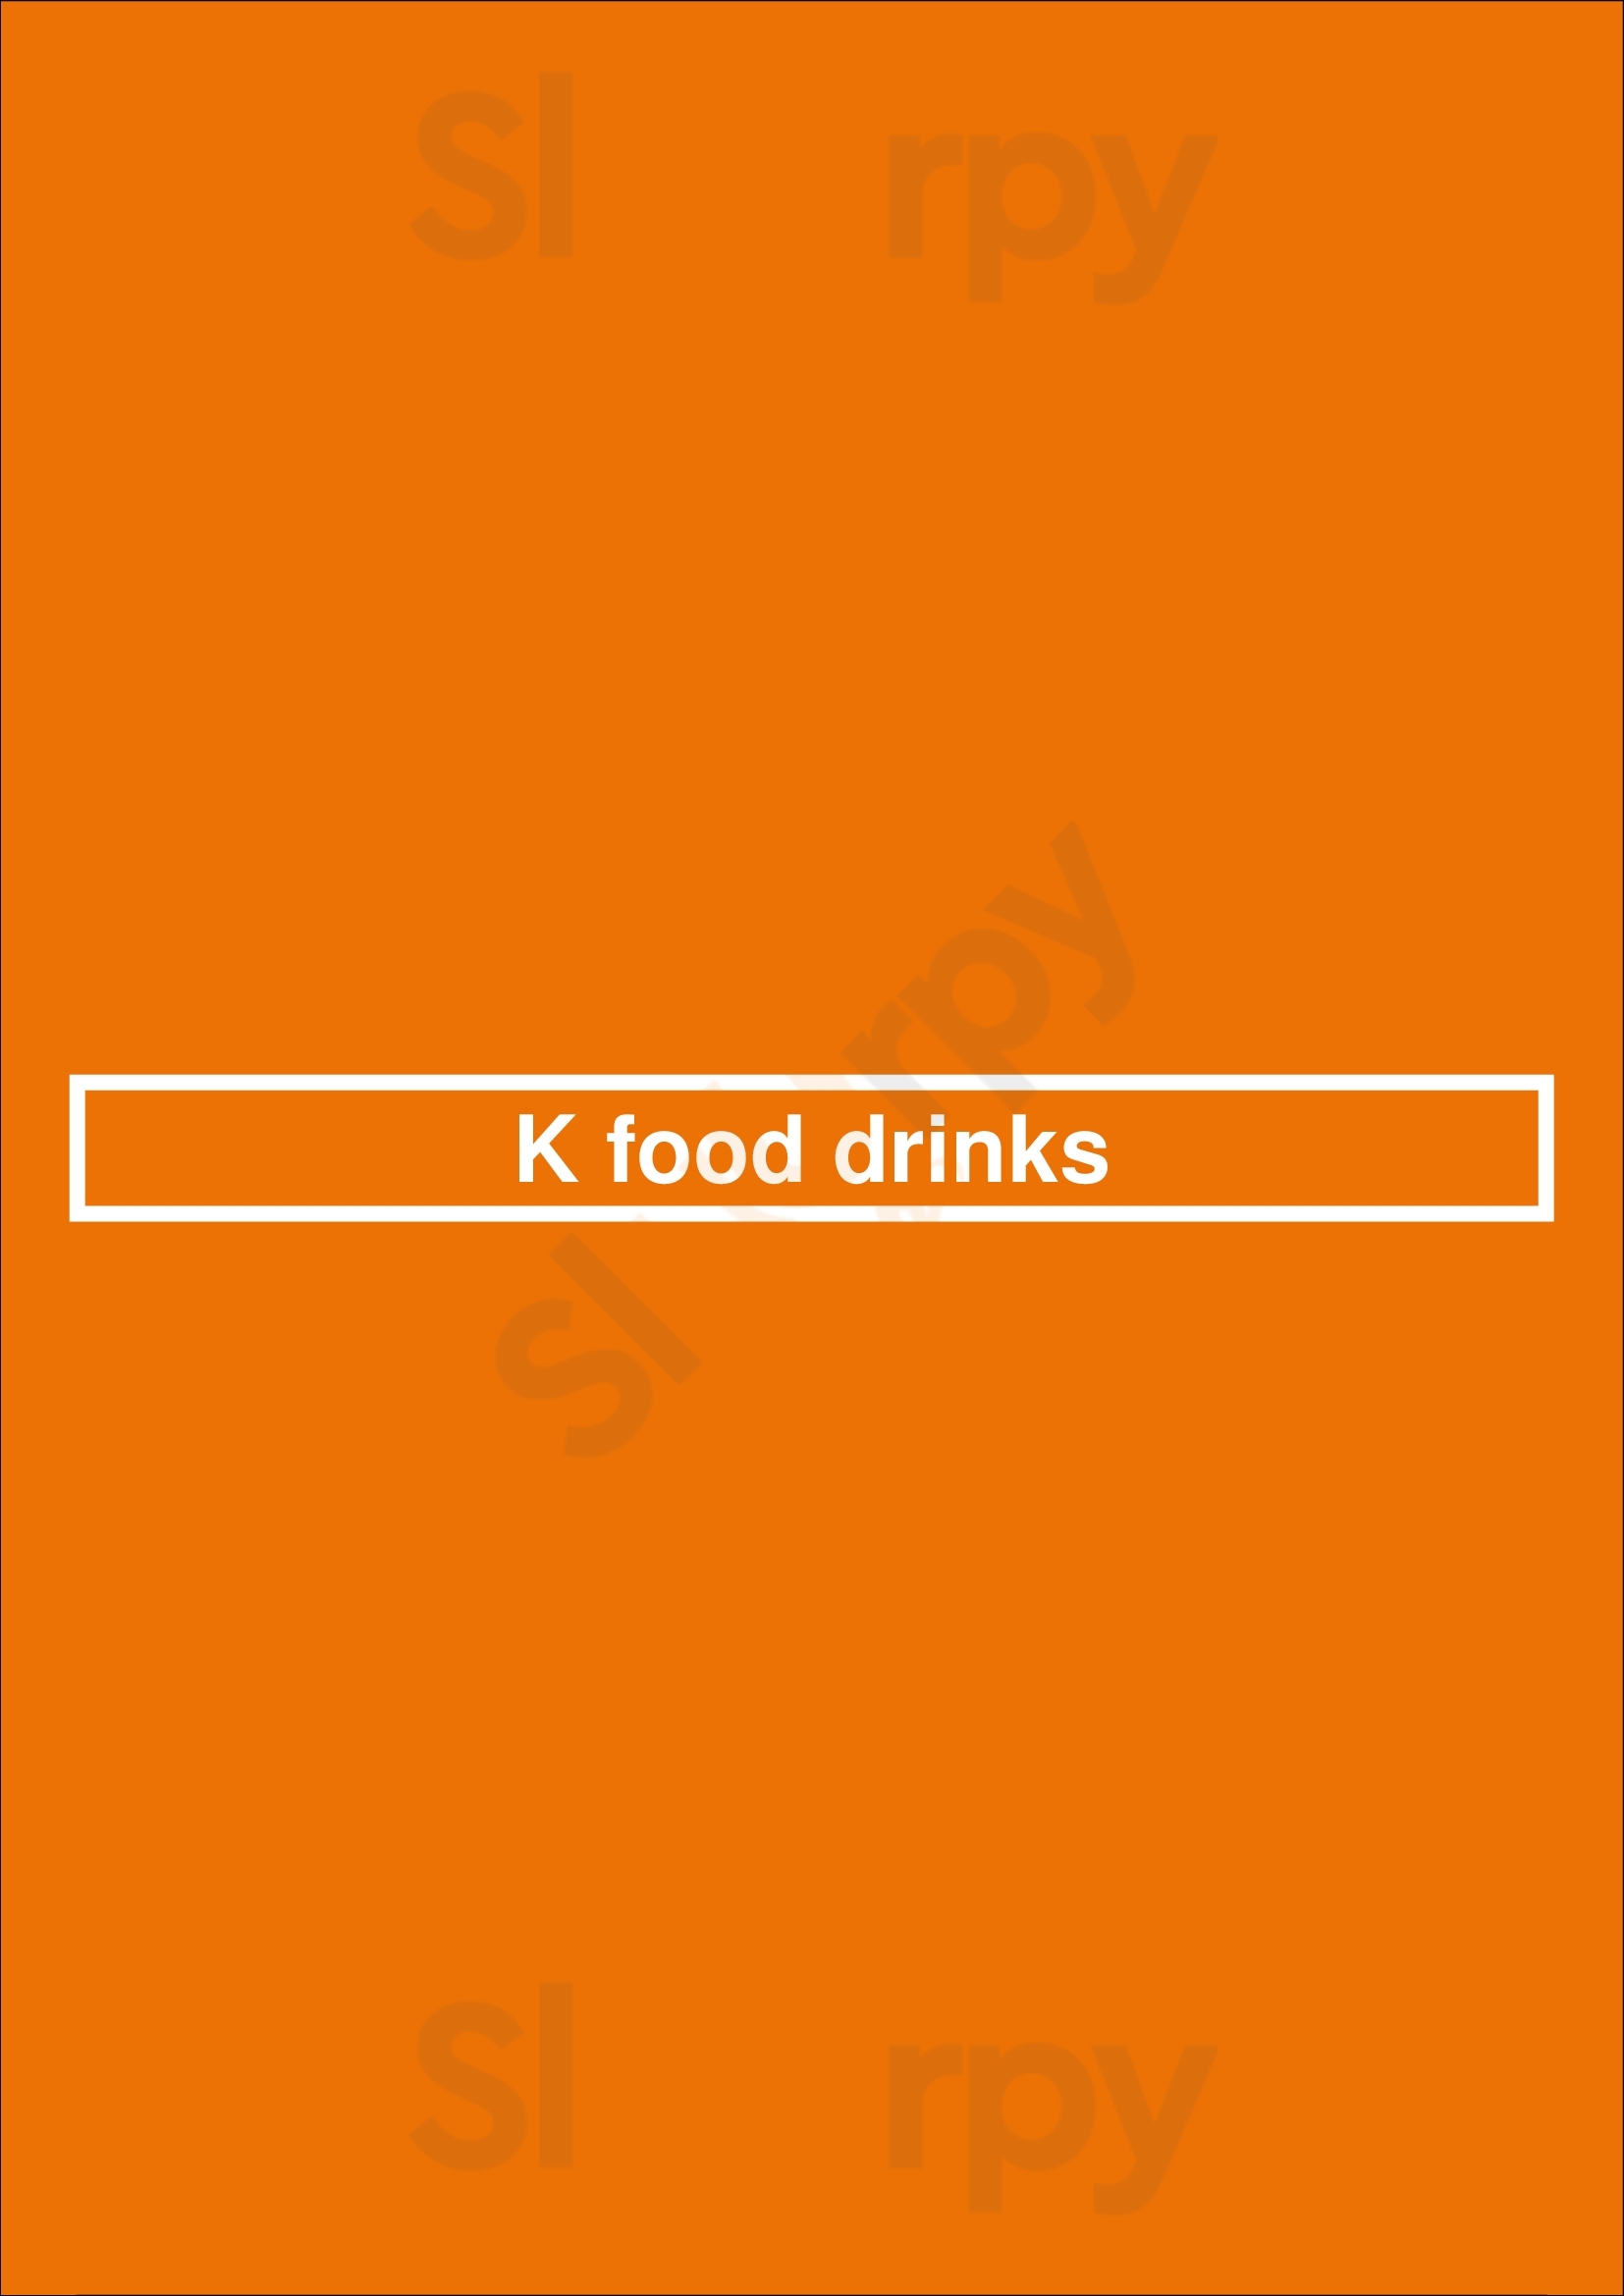 K Food Drinks Barcelos Menu - 1